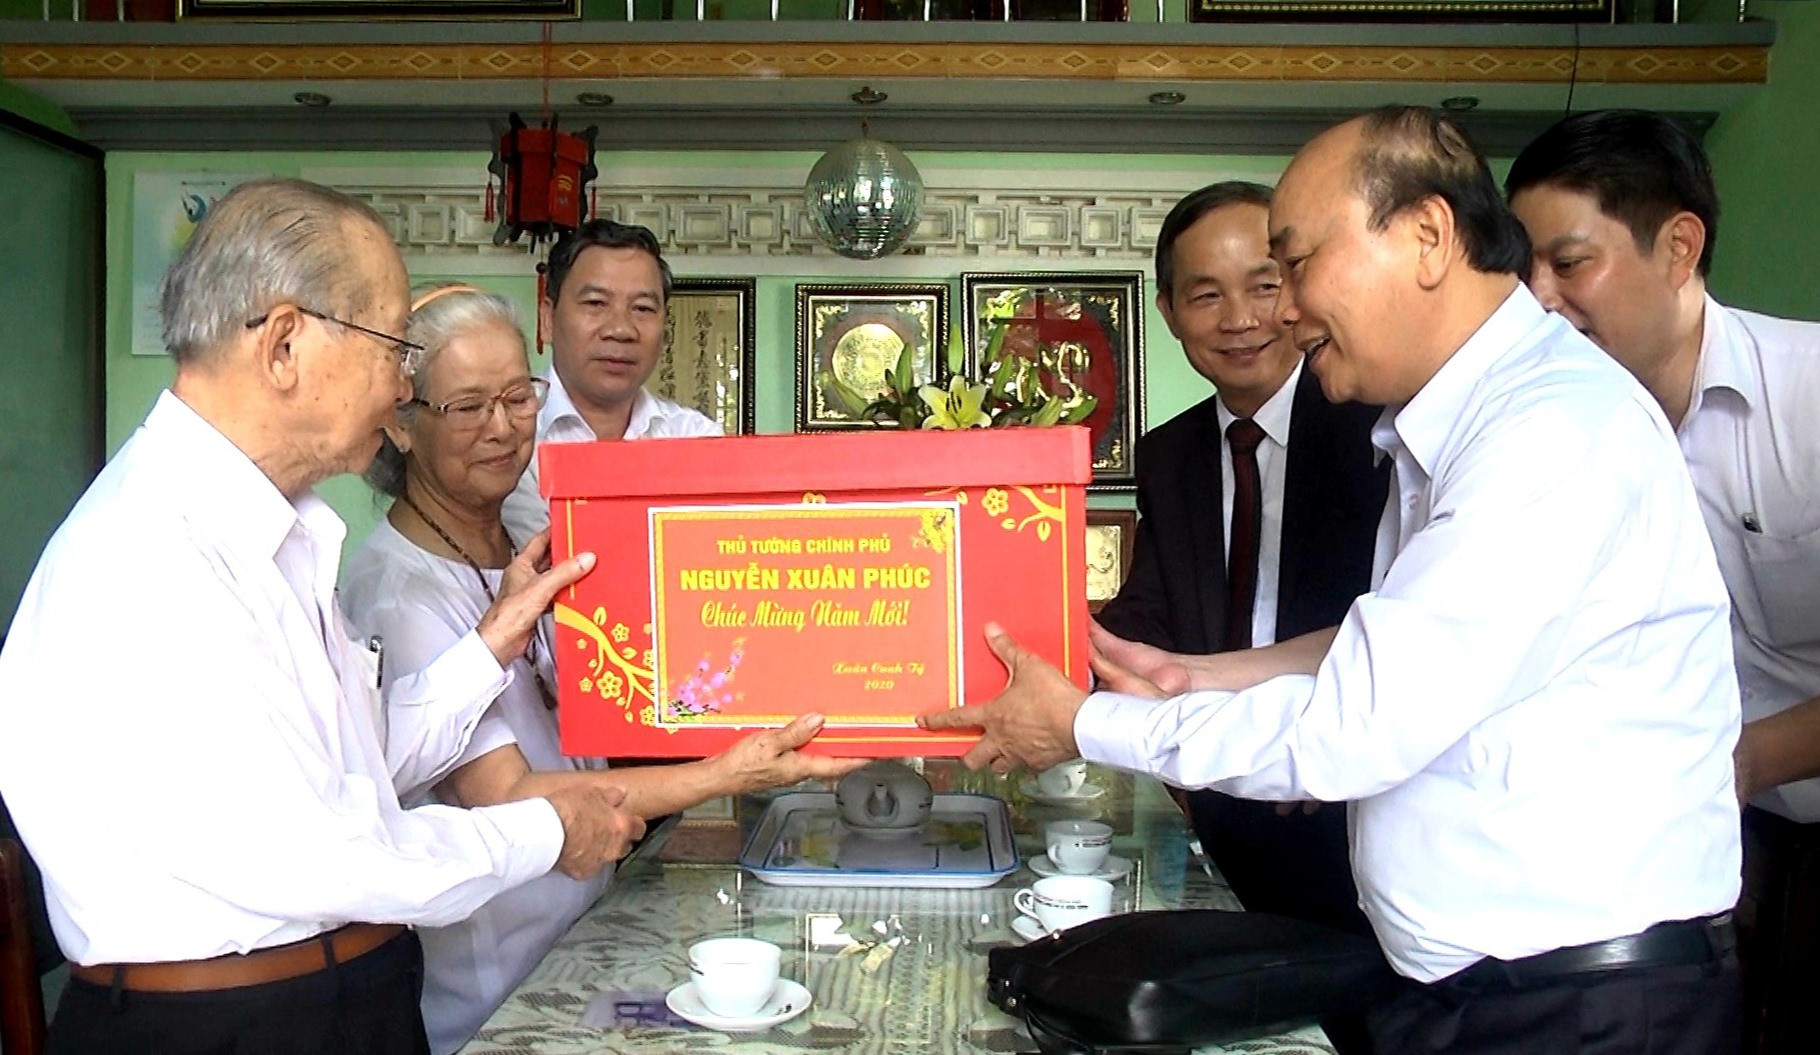 Thủ tướng tặng quà đồng chí Lê Đào - cán bộ lão thành cách mạng, hiện đang sinh sống tại thôn Đông Yên (Duy Trinh, Duy Xuyên). Ảnh: H.N